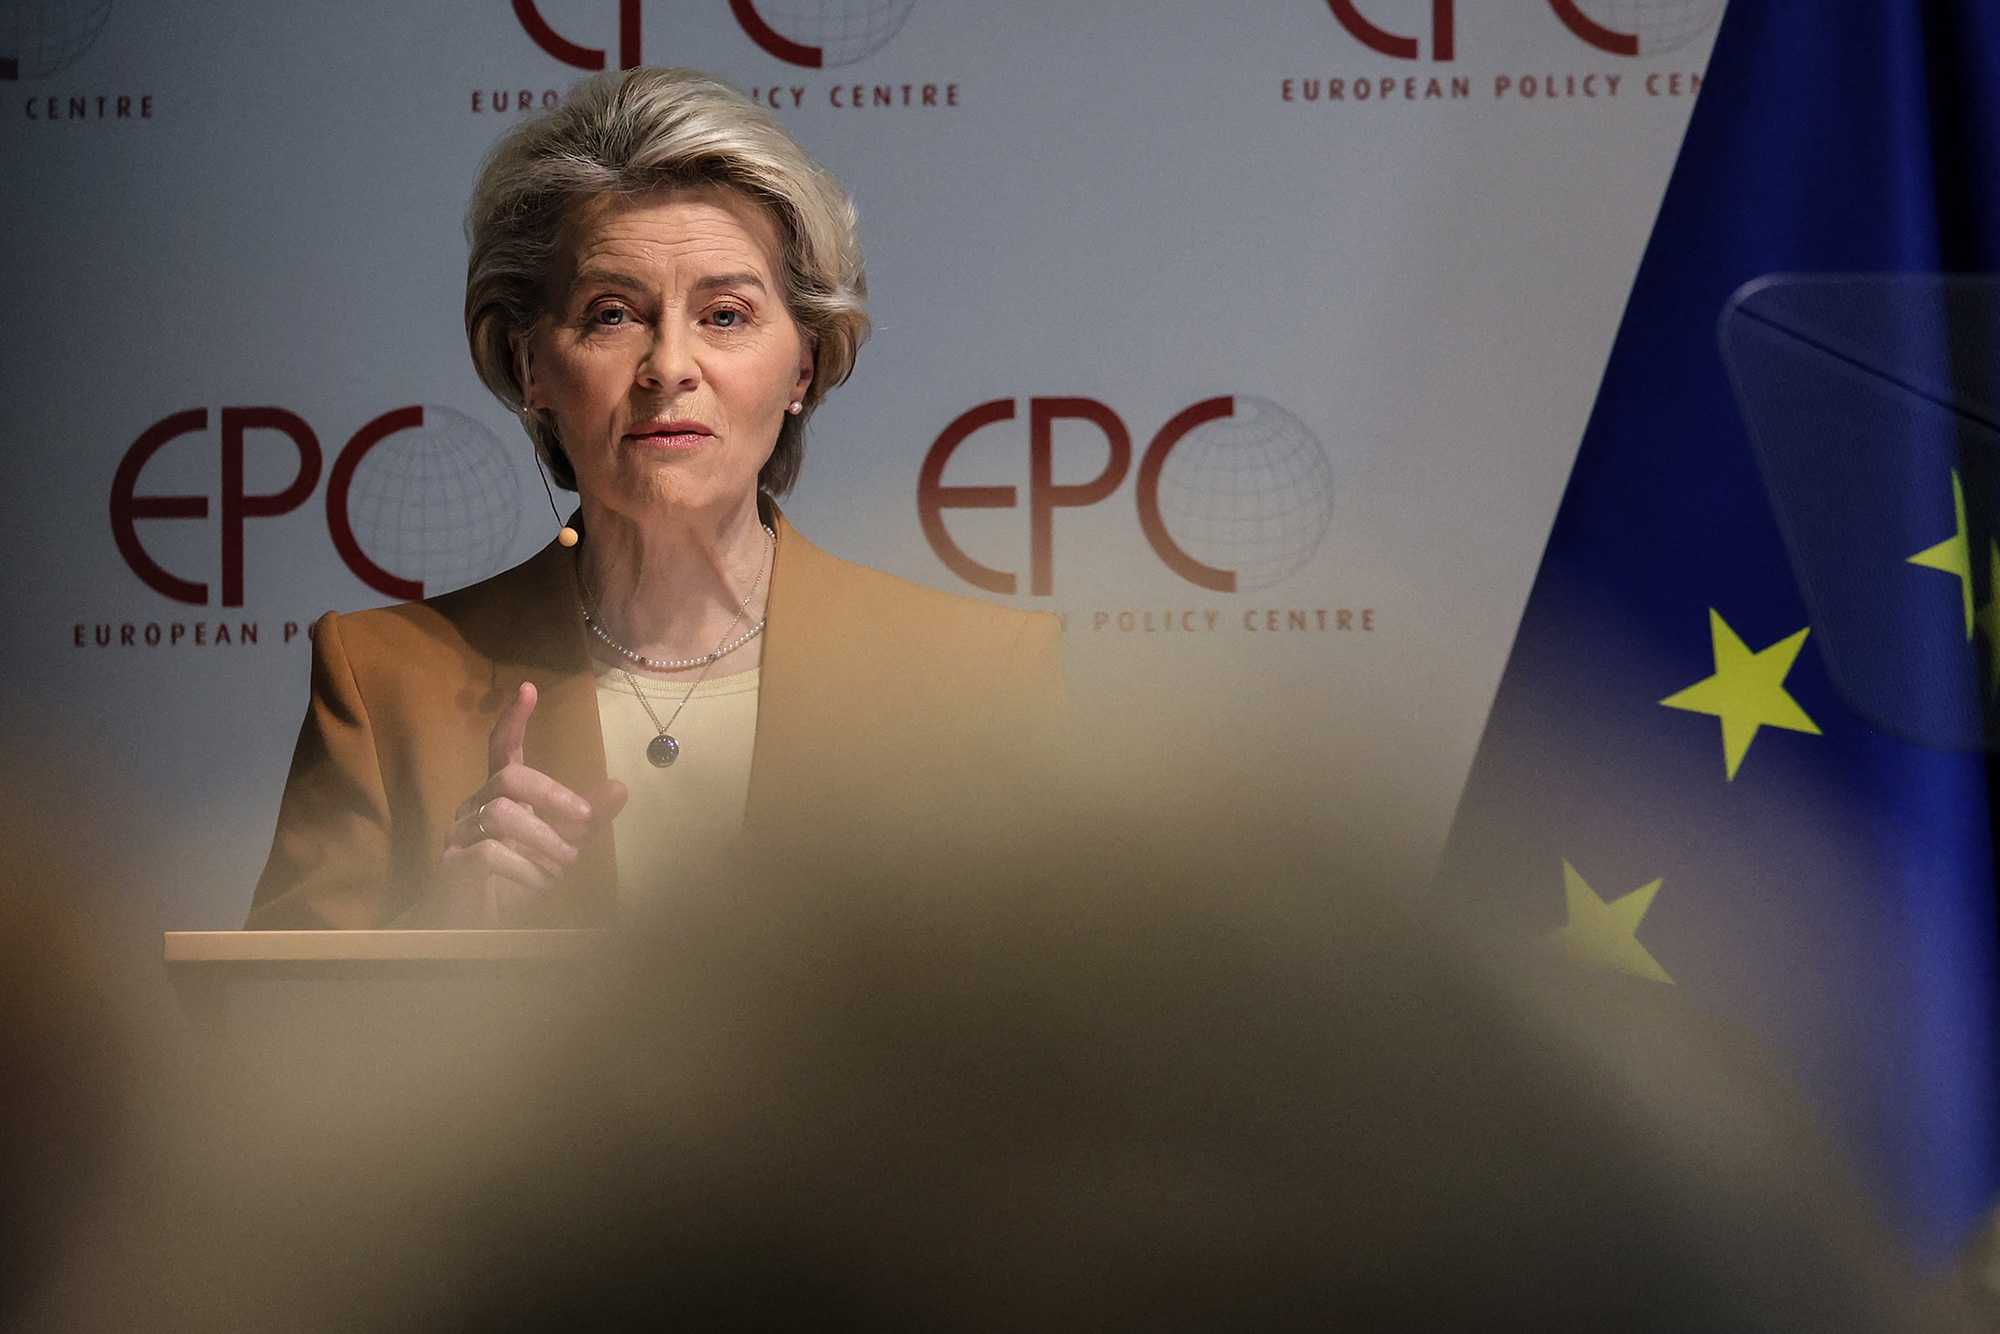 European Commission President Ursula von der Leyen speaks at the European Policy Center in Brussels, on March 30, 2023.